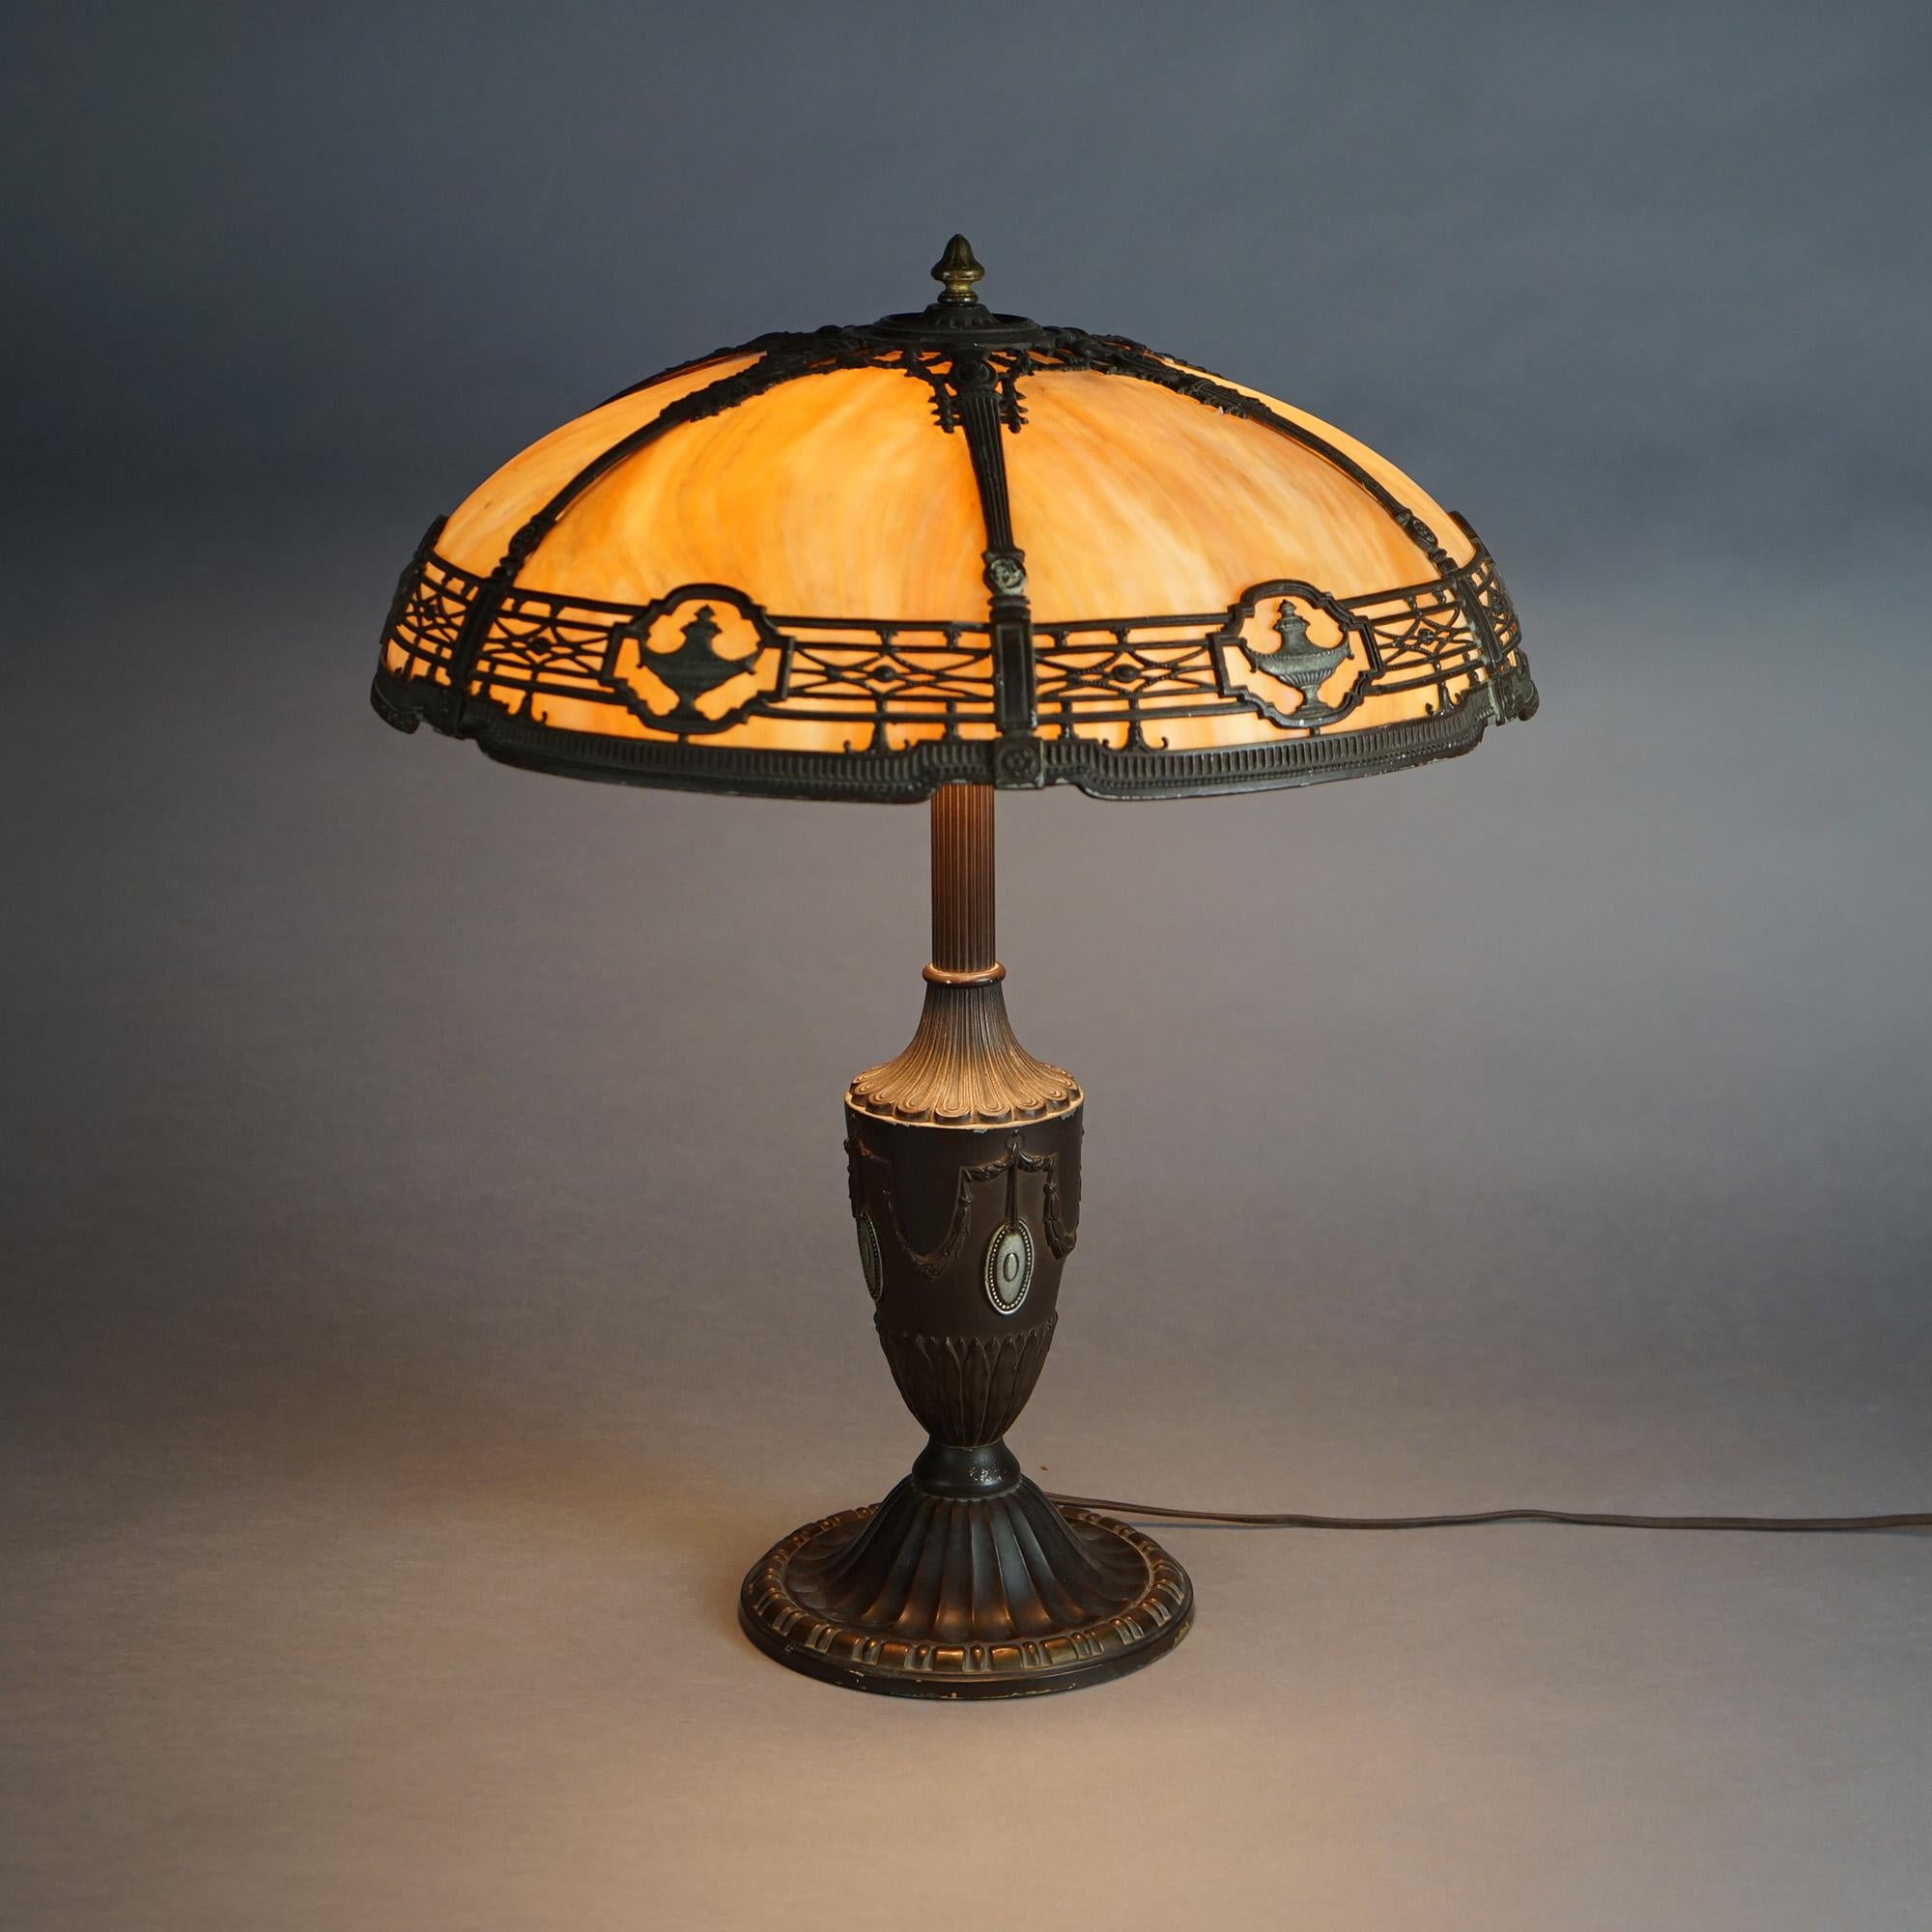 Eine antike Arts & Crafts Tischlampe von Bradley & Hubbard bietet einen kuppelförmigen Gussschirm mit neoklassizistischen Elementen und gebogenen Schlackengläsern über einem gegossenen Urnensockel mit drei Leuchten, um 1920
 
Maße: 22''H x 18,25''B